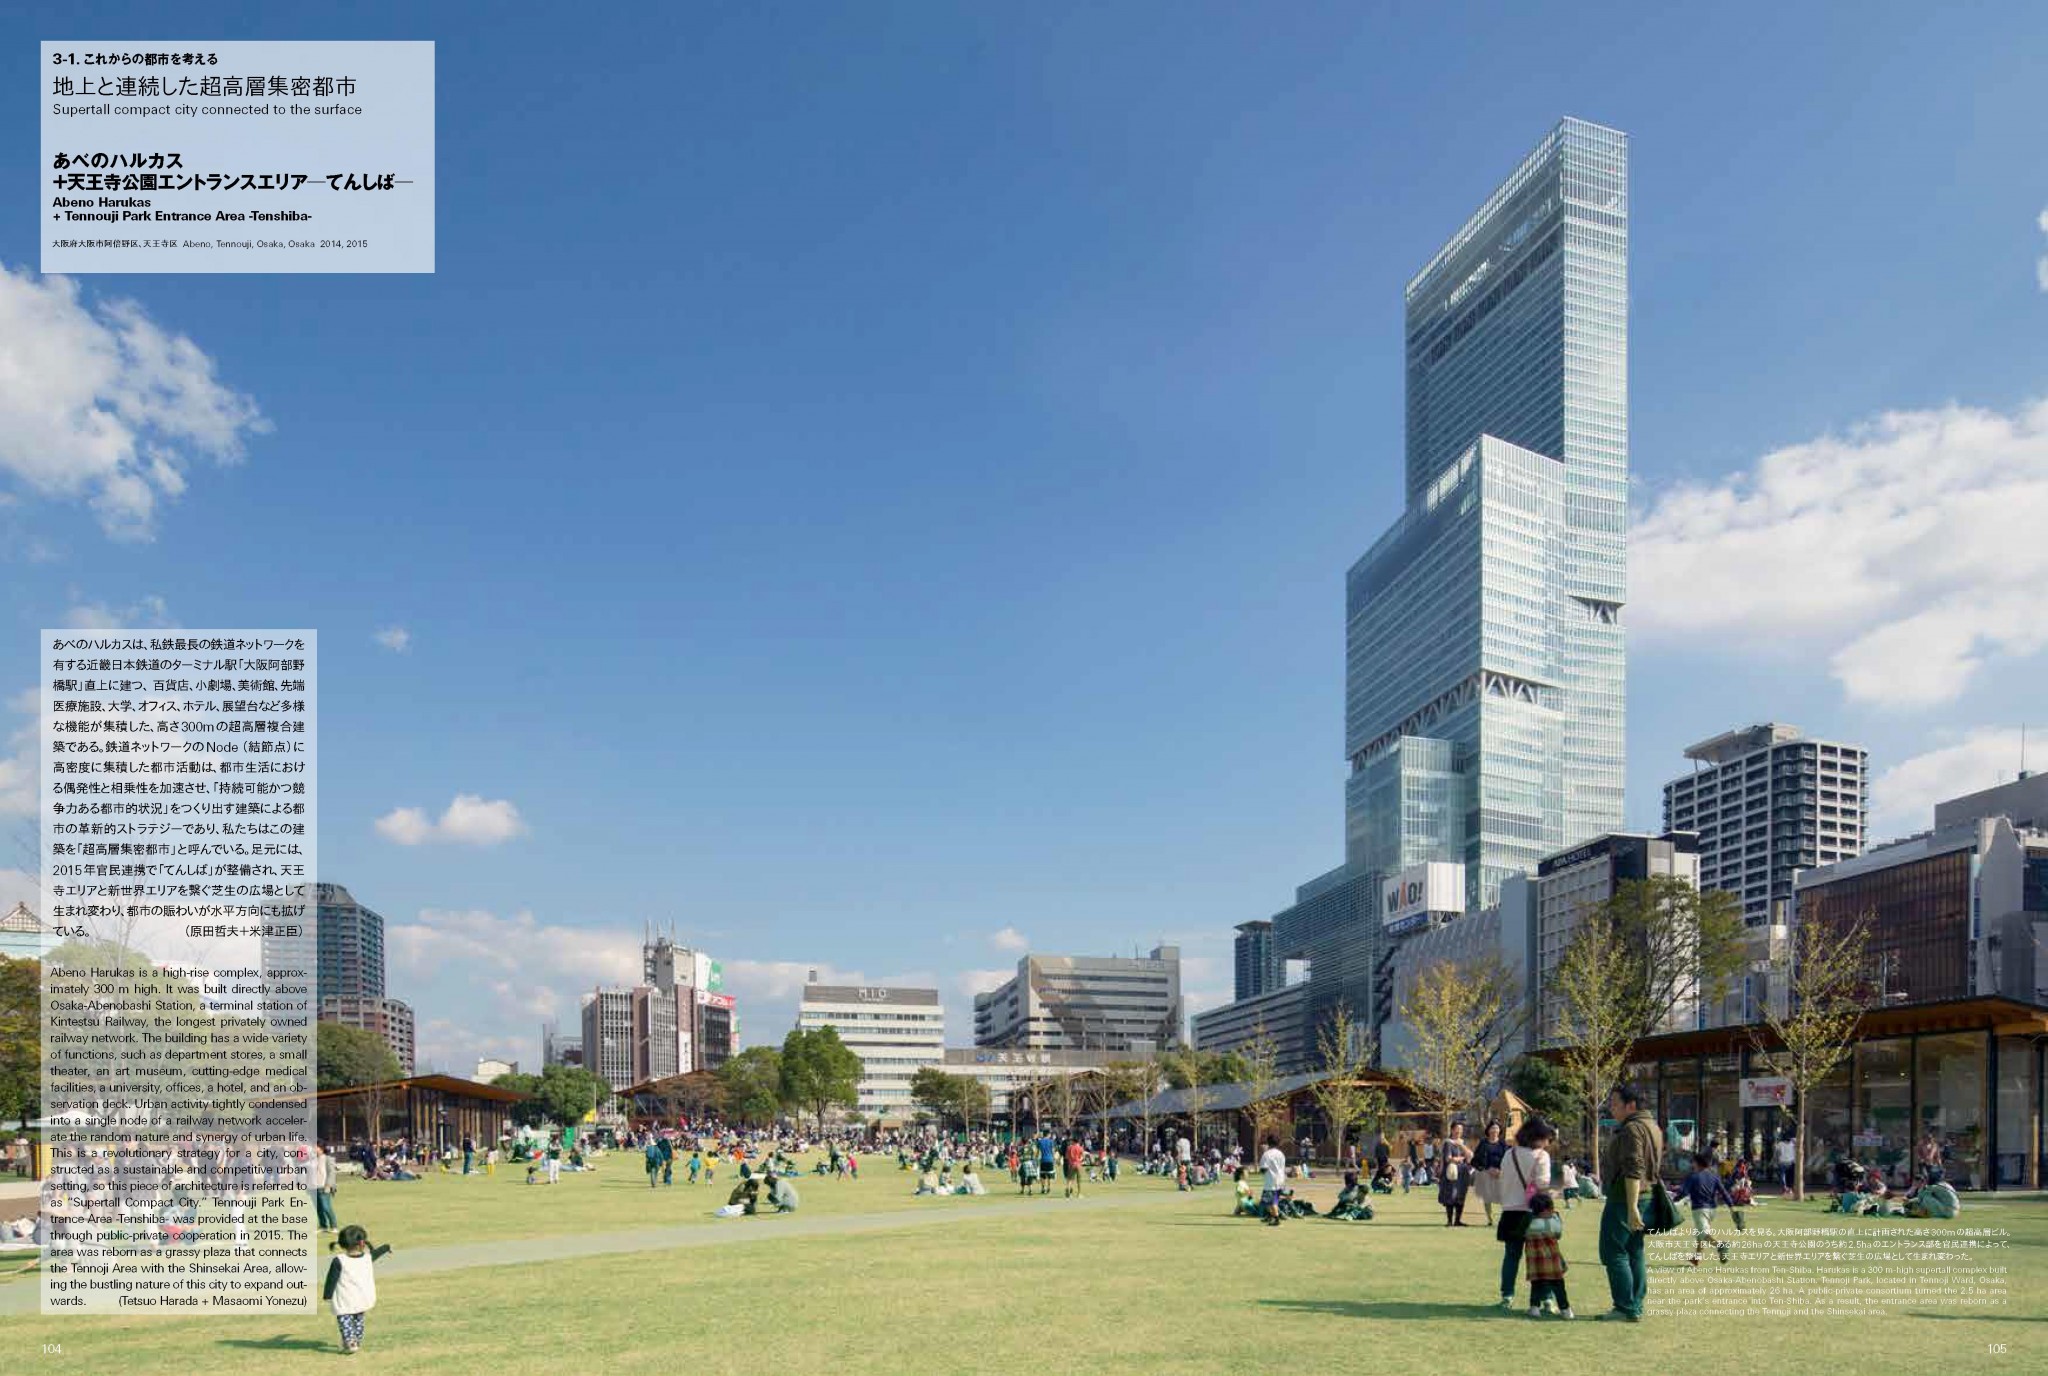 新建築 2020年4月別冊 – TAKENAKA DESIGN WORKS 2011-2020 竹中工務店 